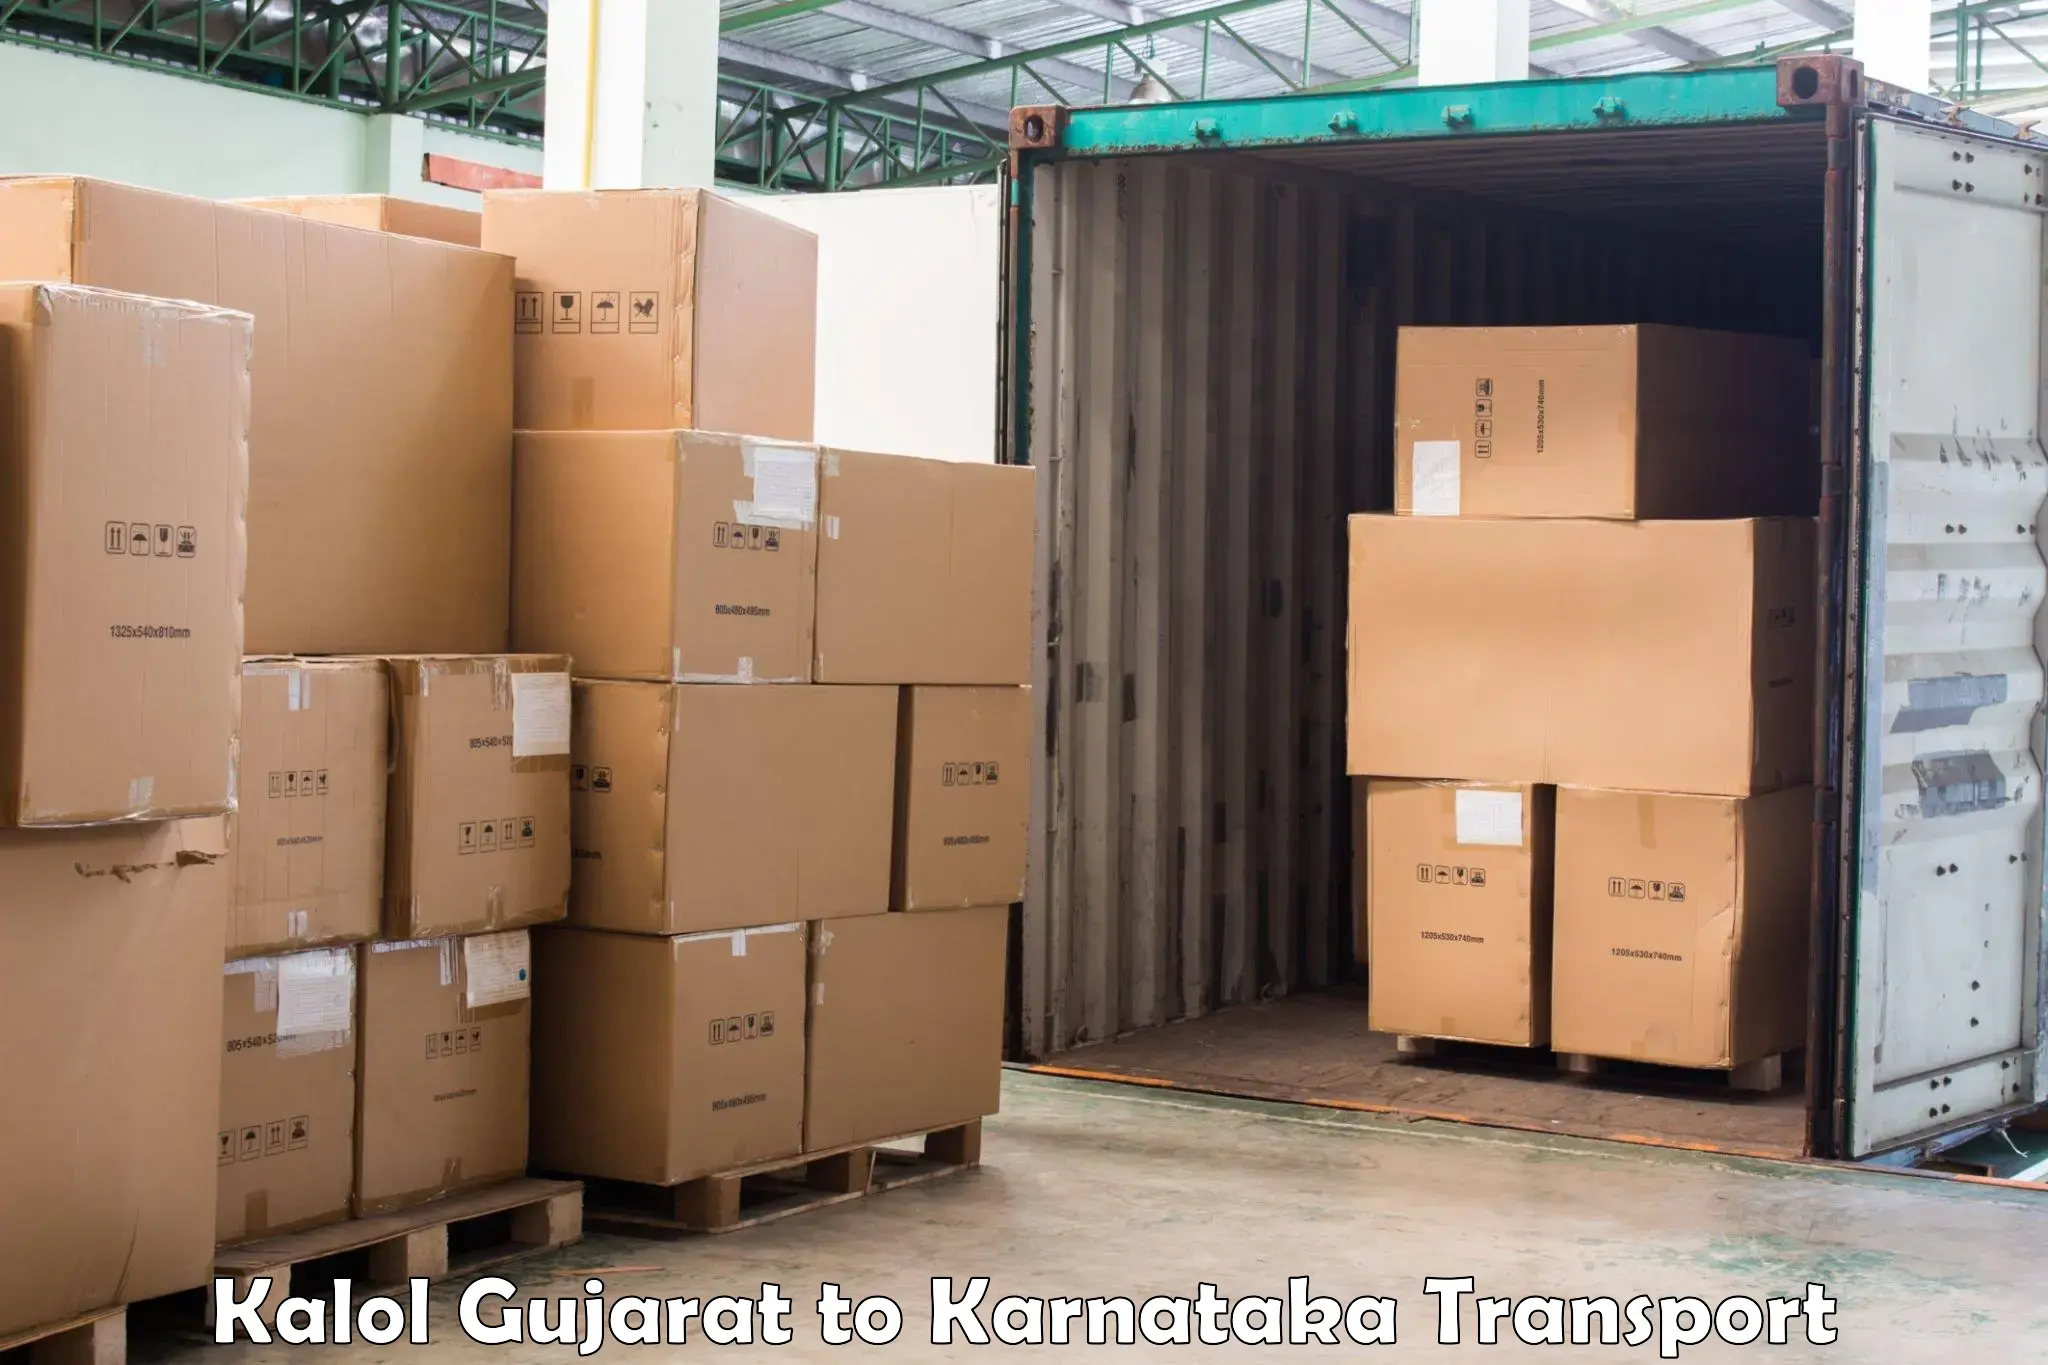 Lorry transport service Kalol Gujarat to Karnataka